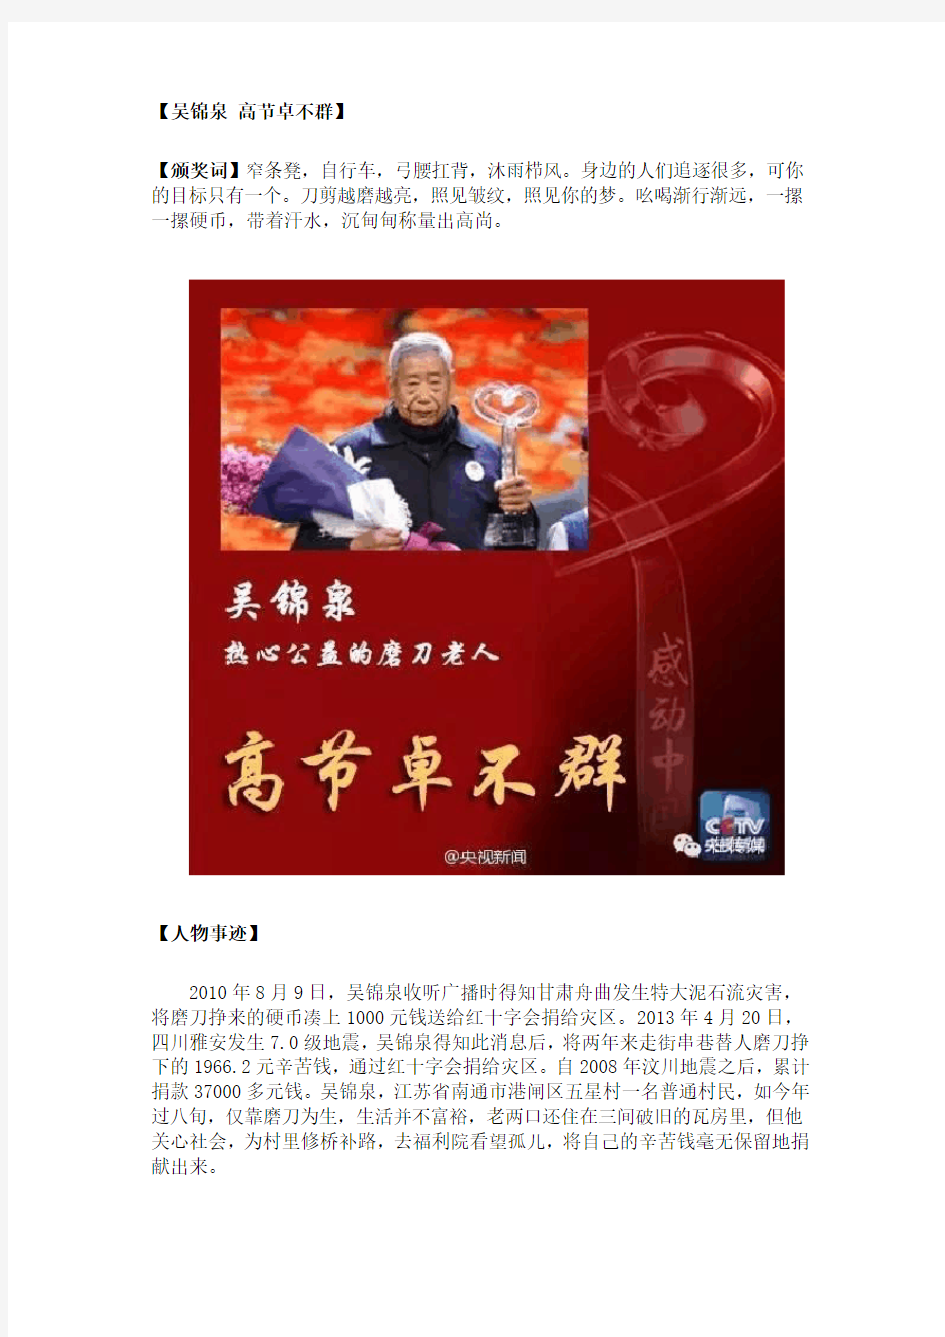 2015年度中央电视台感动中国人物颁奖词及主要事迹